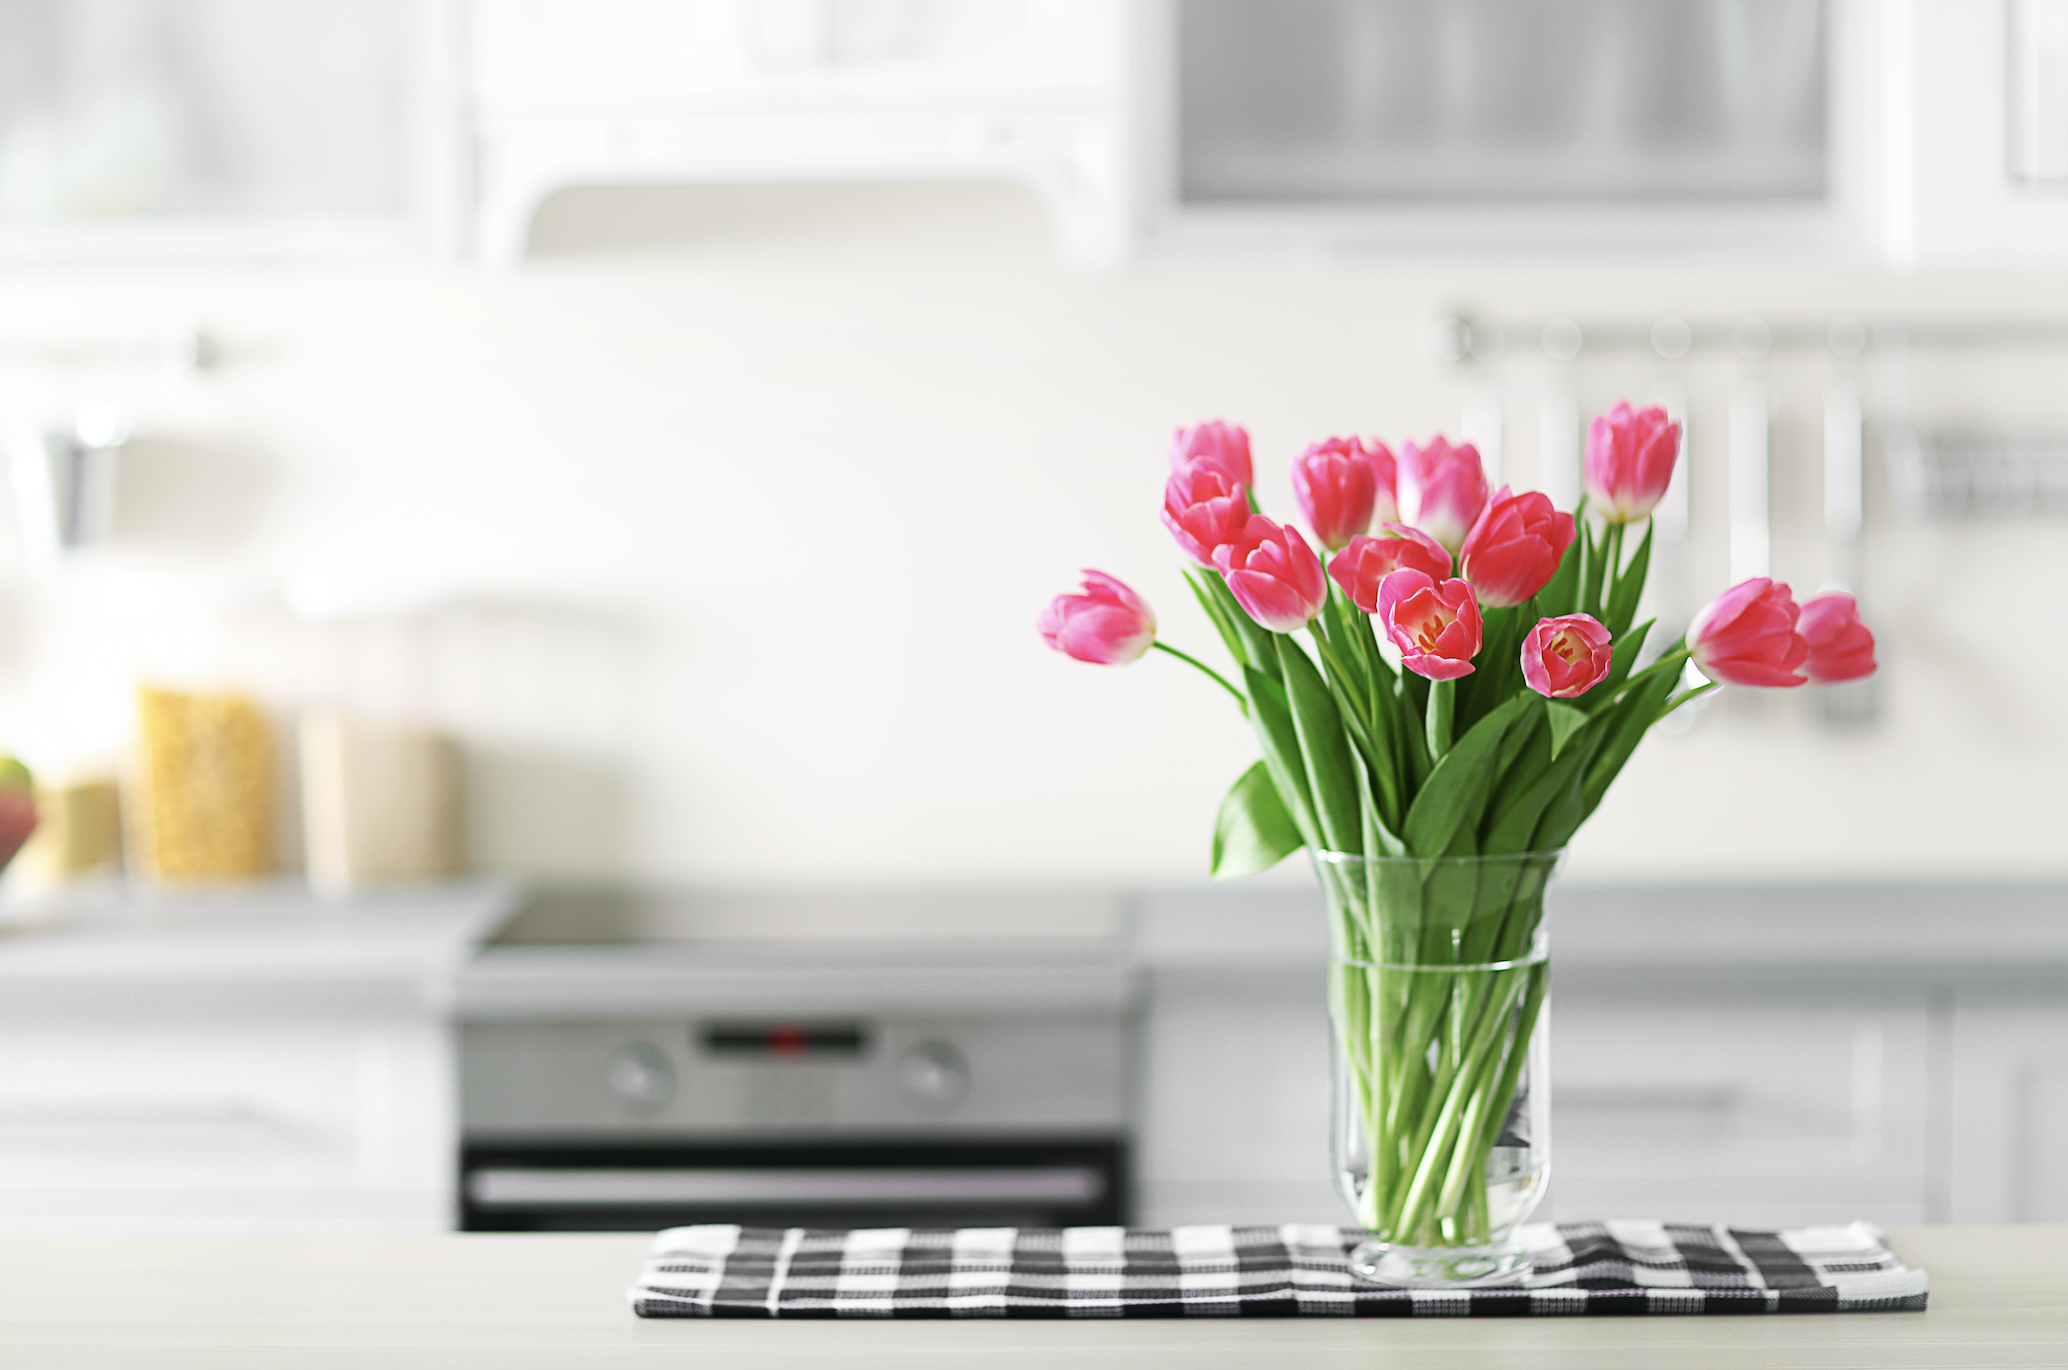 Букет тюльпанов в интерьере. Тюльпаны в интерьере кухни. Цветы на кухонном столе. Цветы на кухне. Тюльпаны в холодильнике без воды можно ли